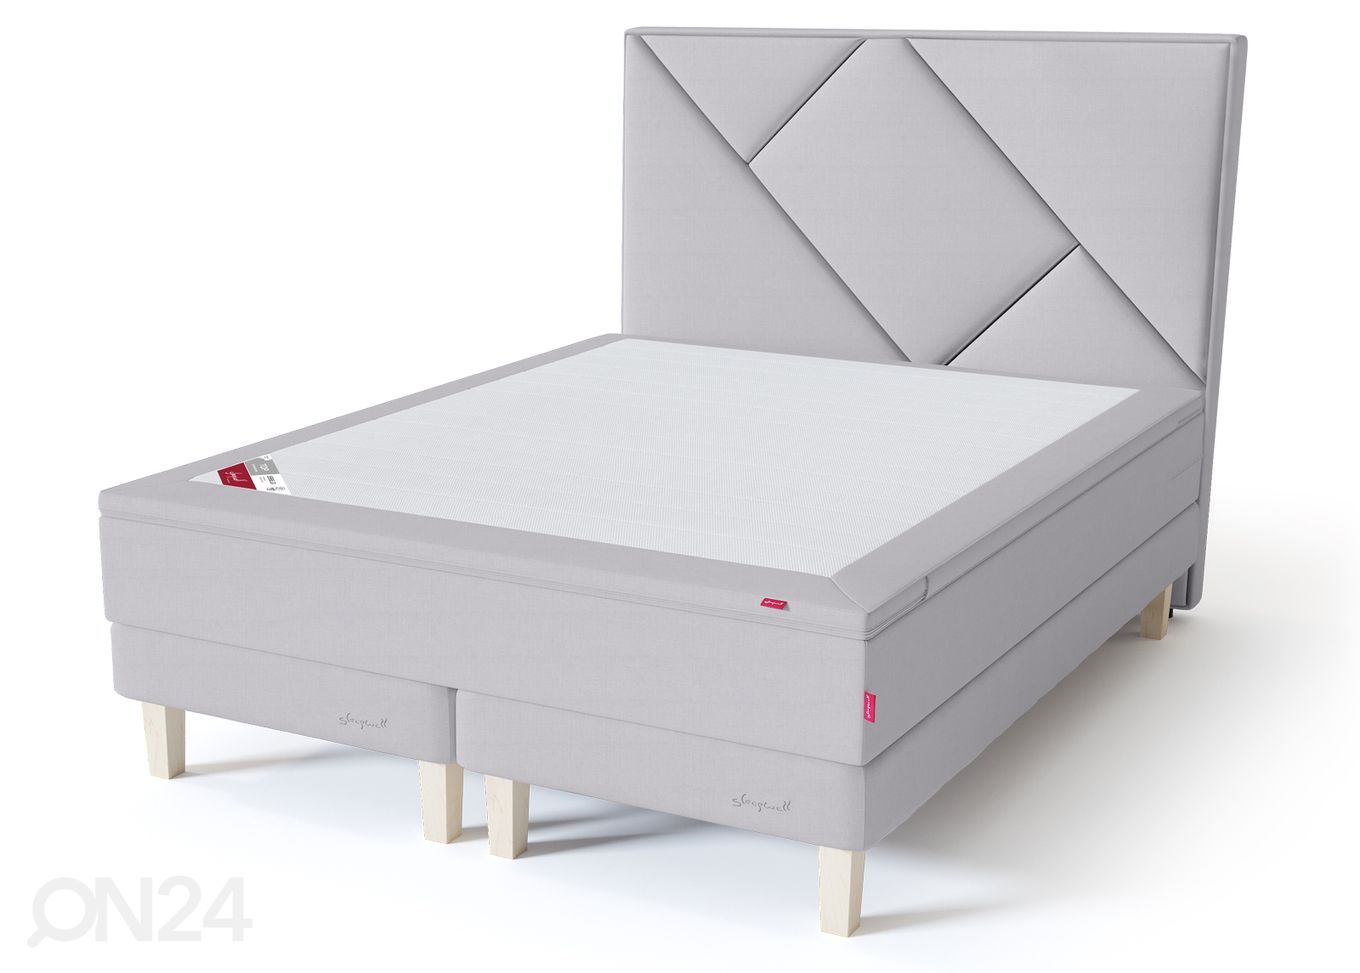 Sleepwell Red континентальная кровать на раме 180x200 cm мягкая увеличить